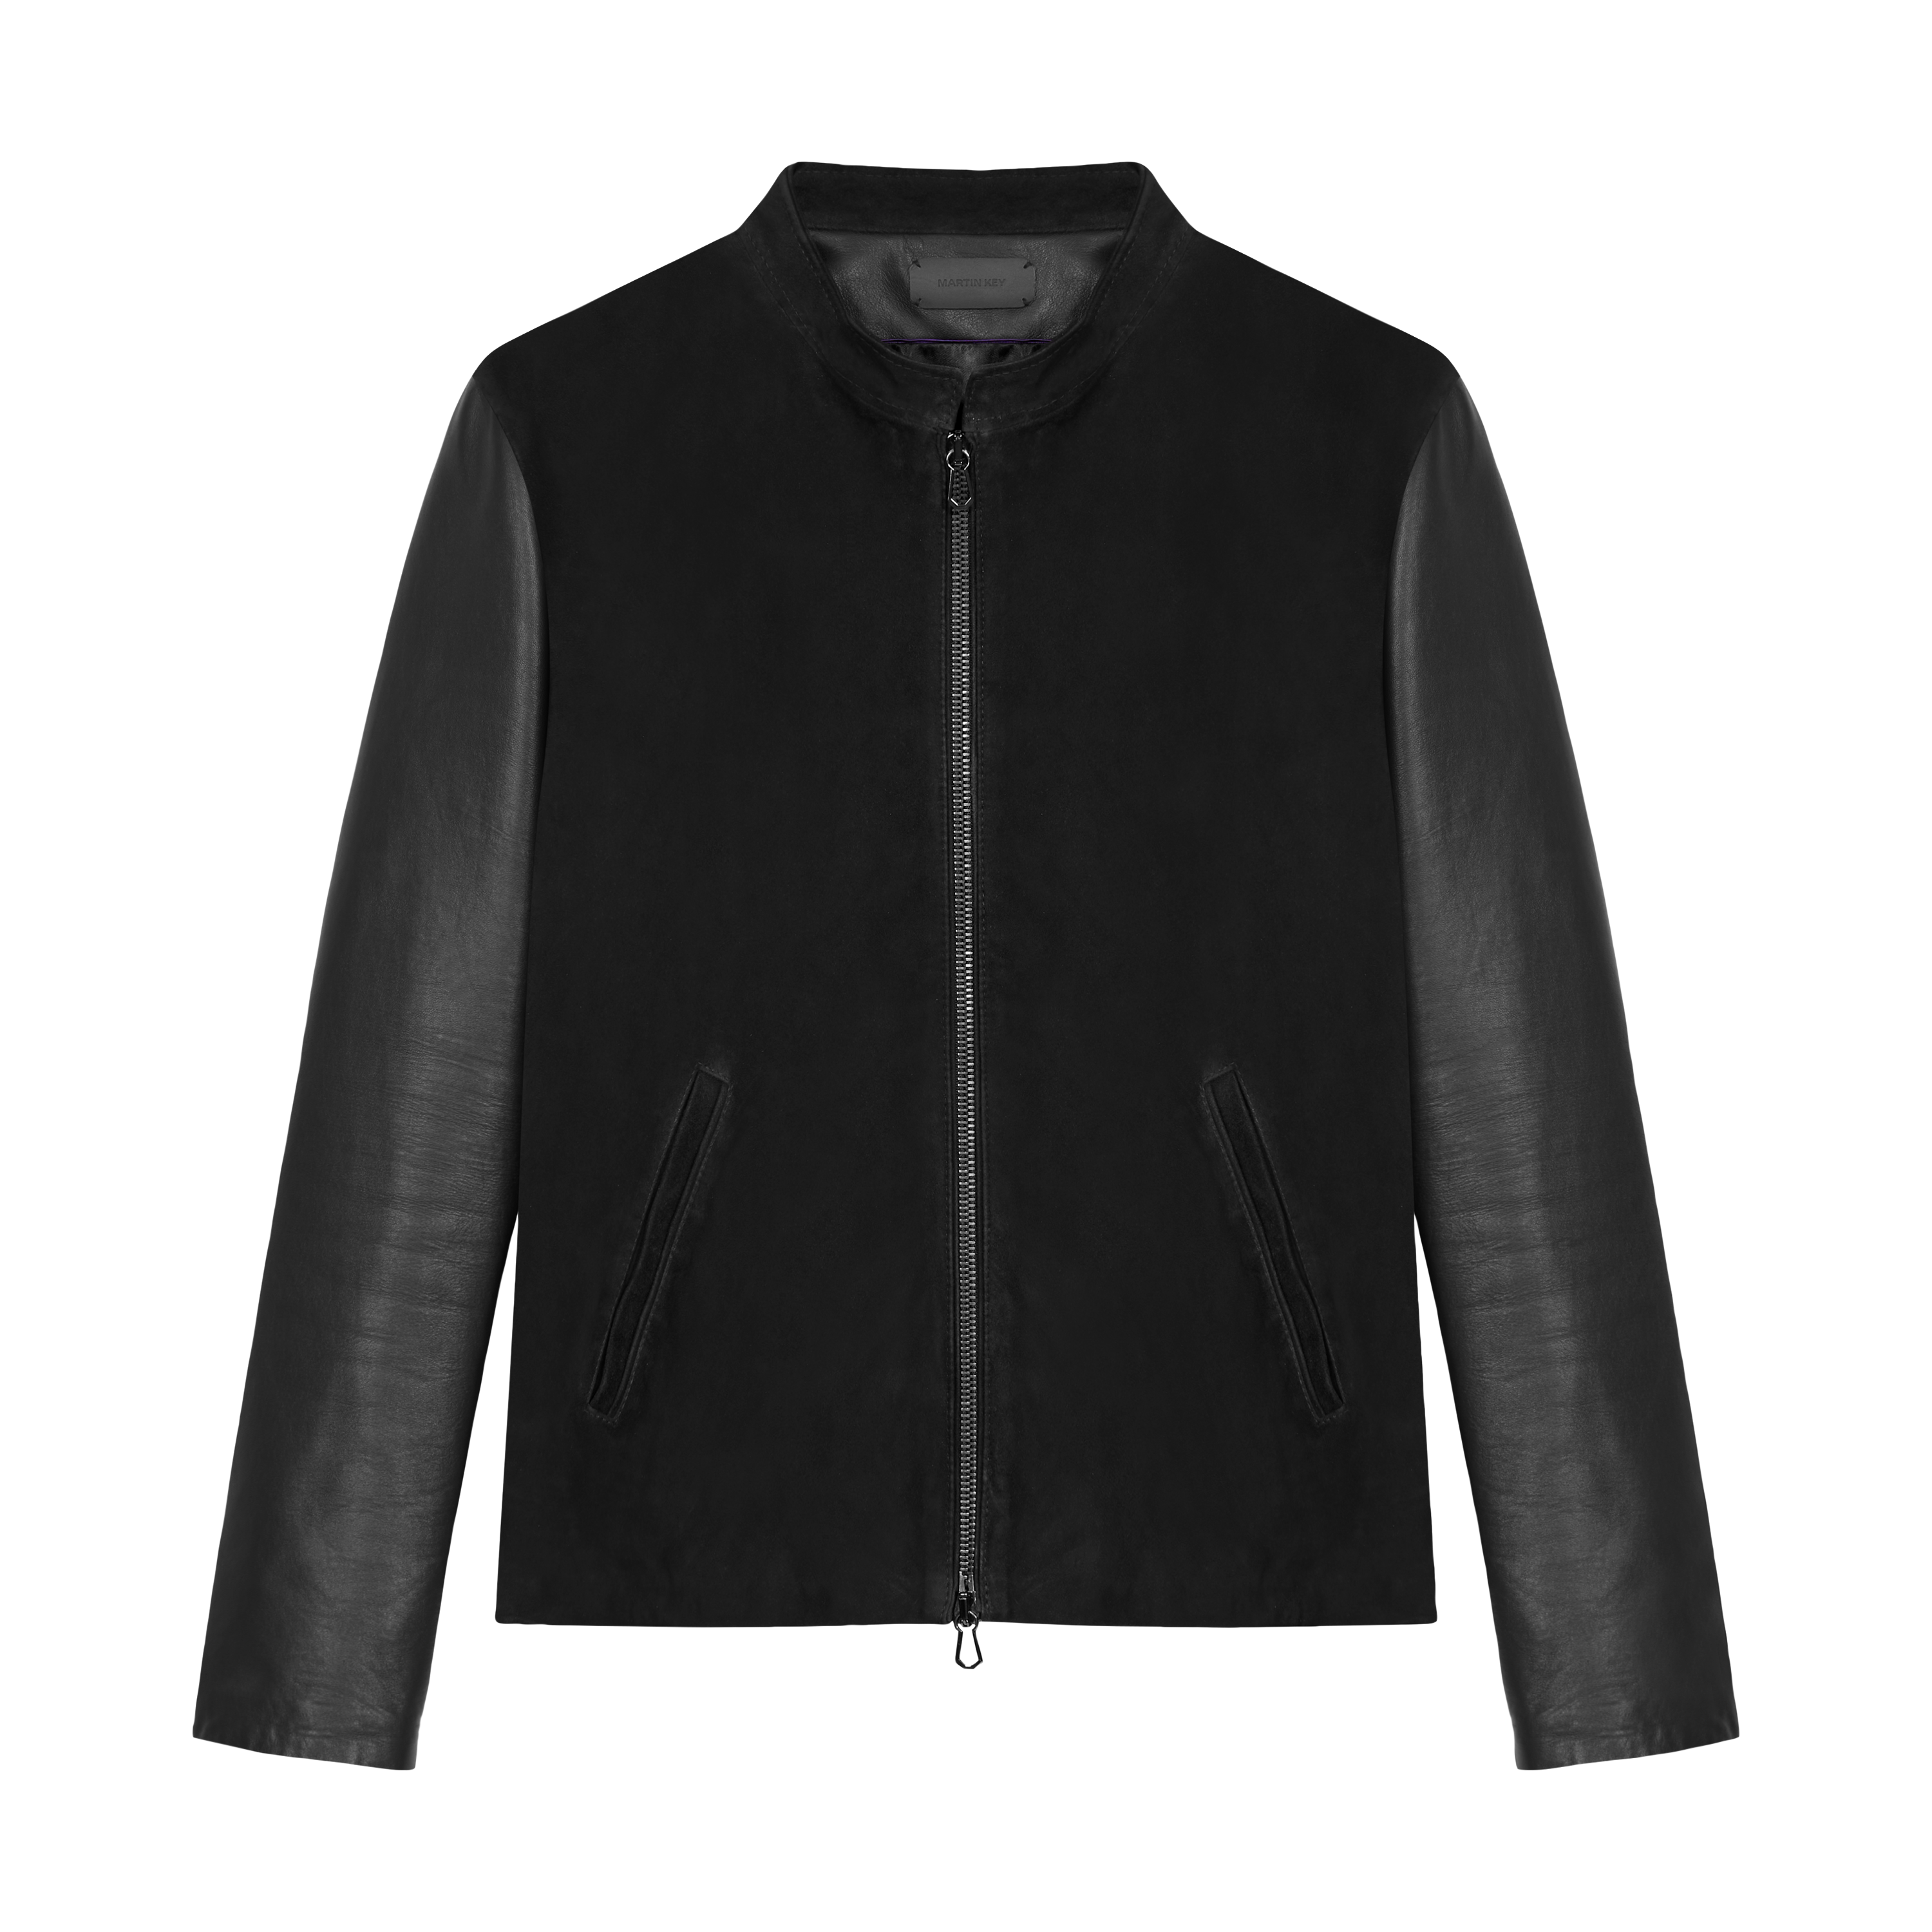 Leather jacket - Östermalm by Martin Key